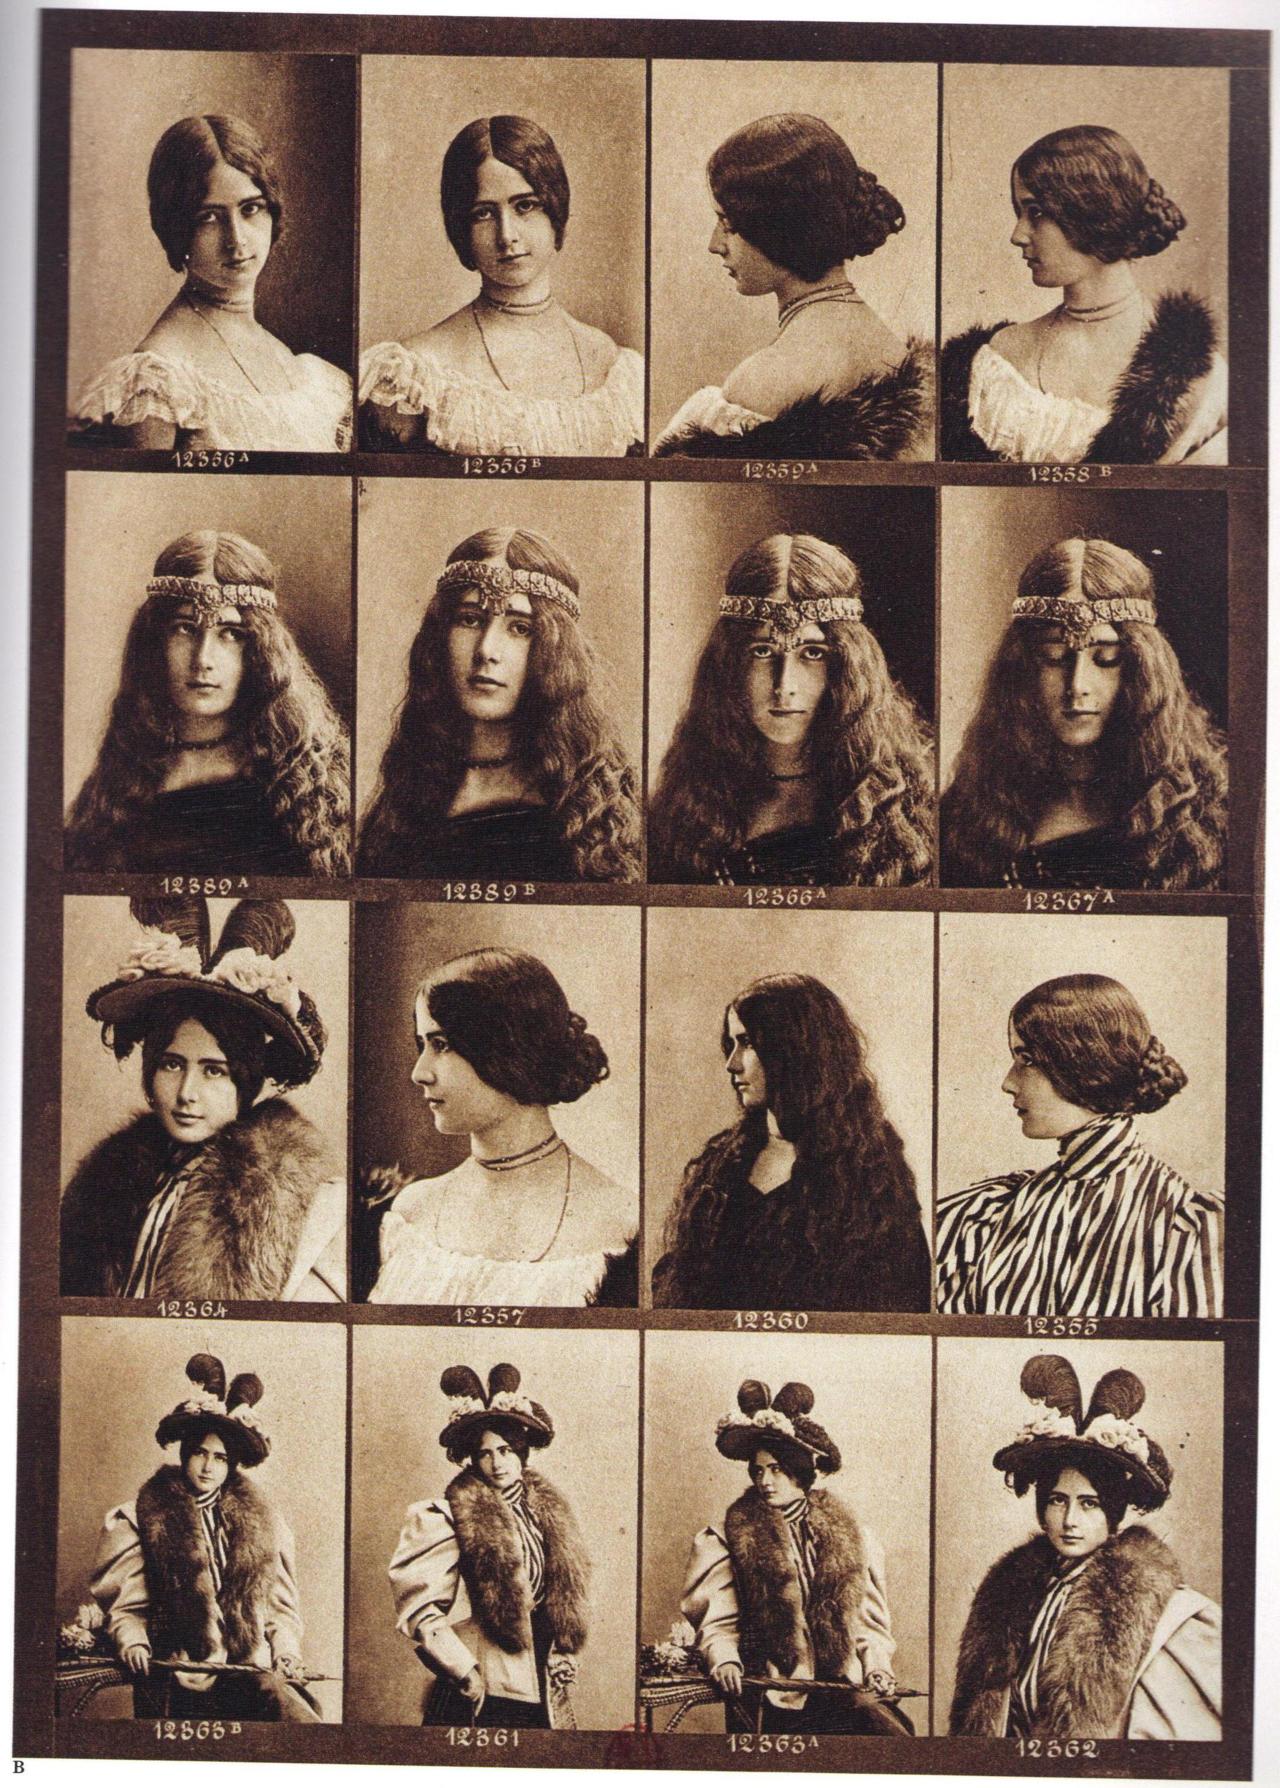 1890s-cleo-de-merode-11.jpg